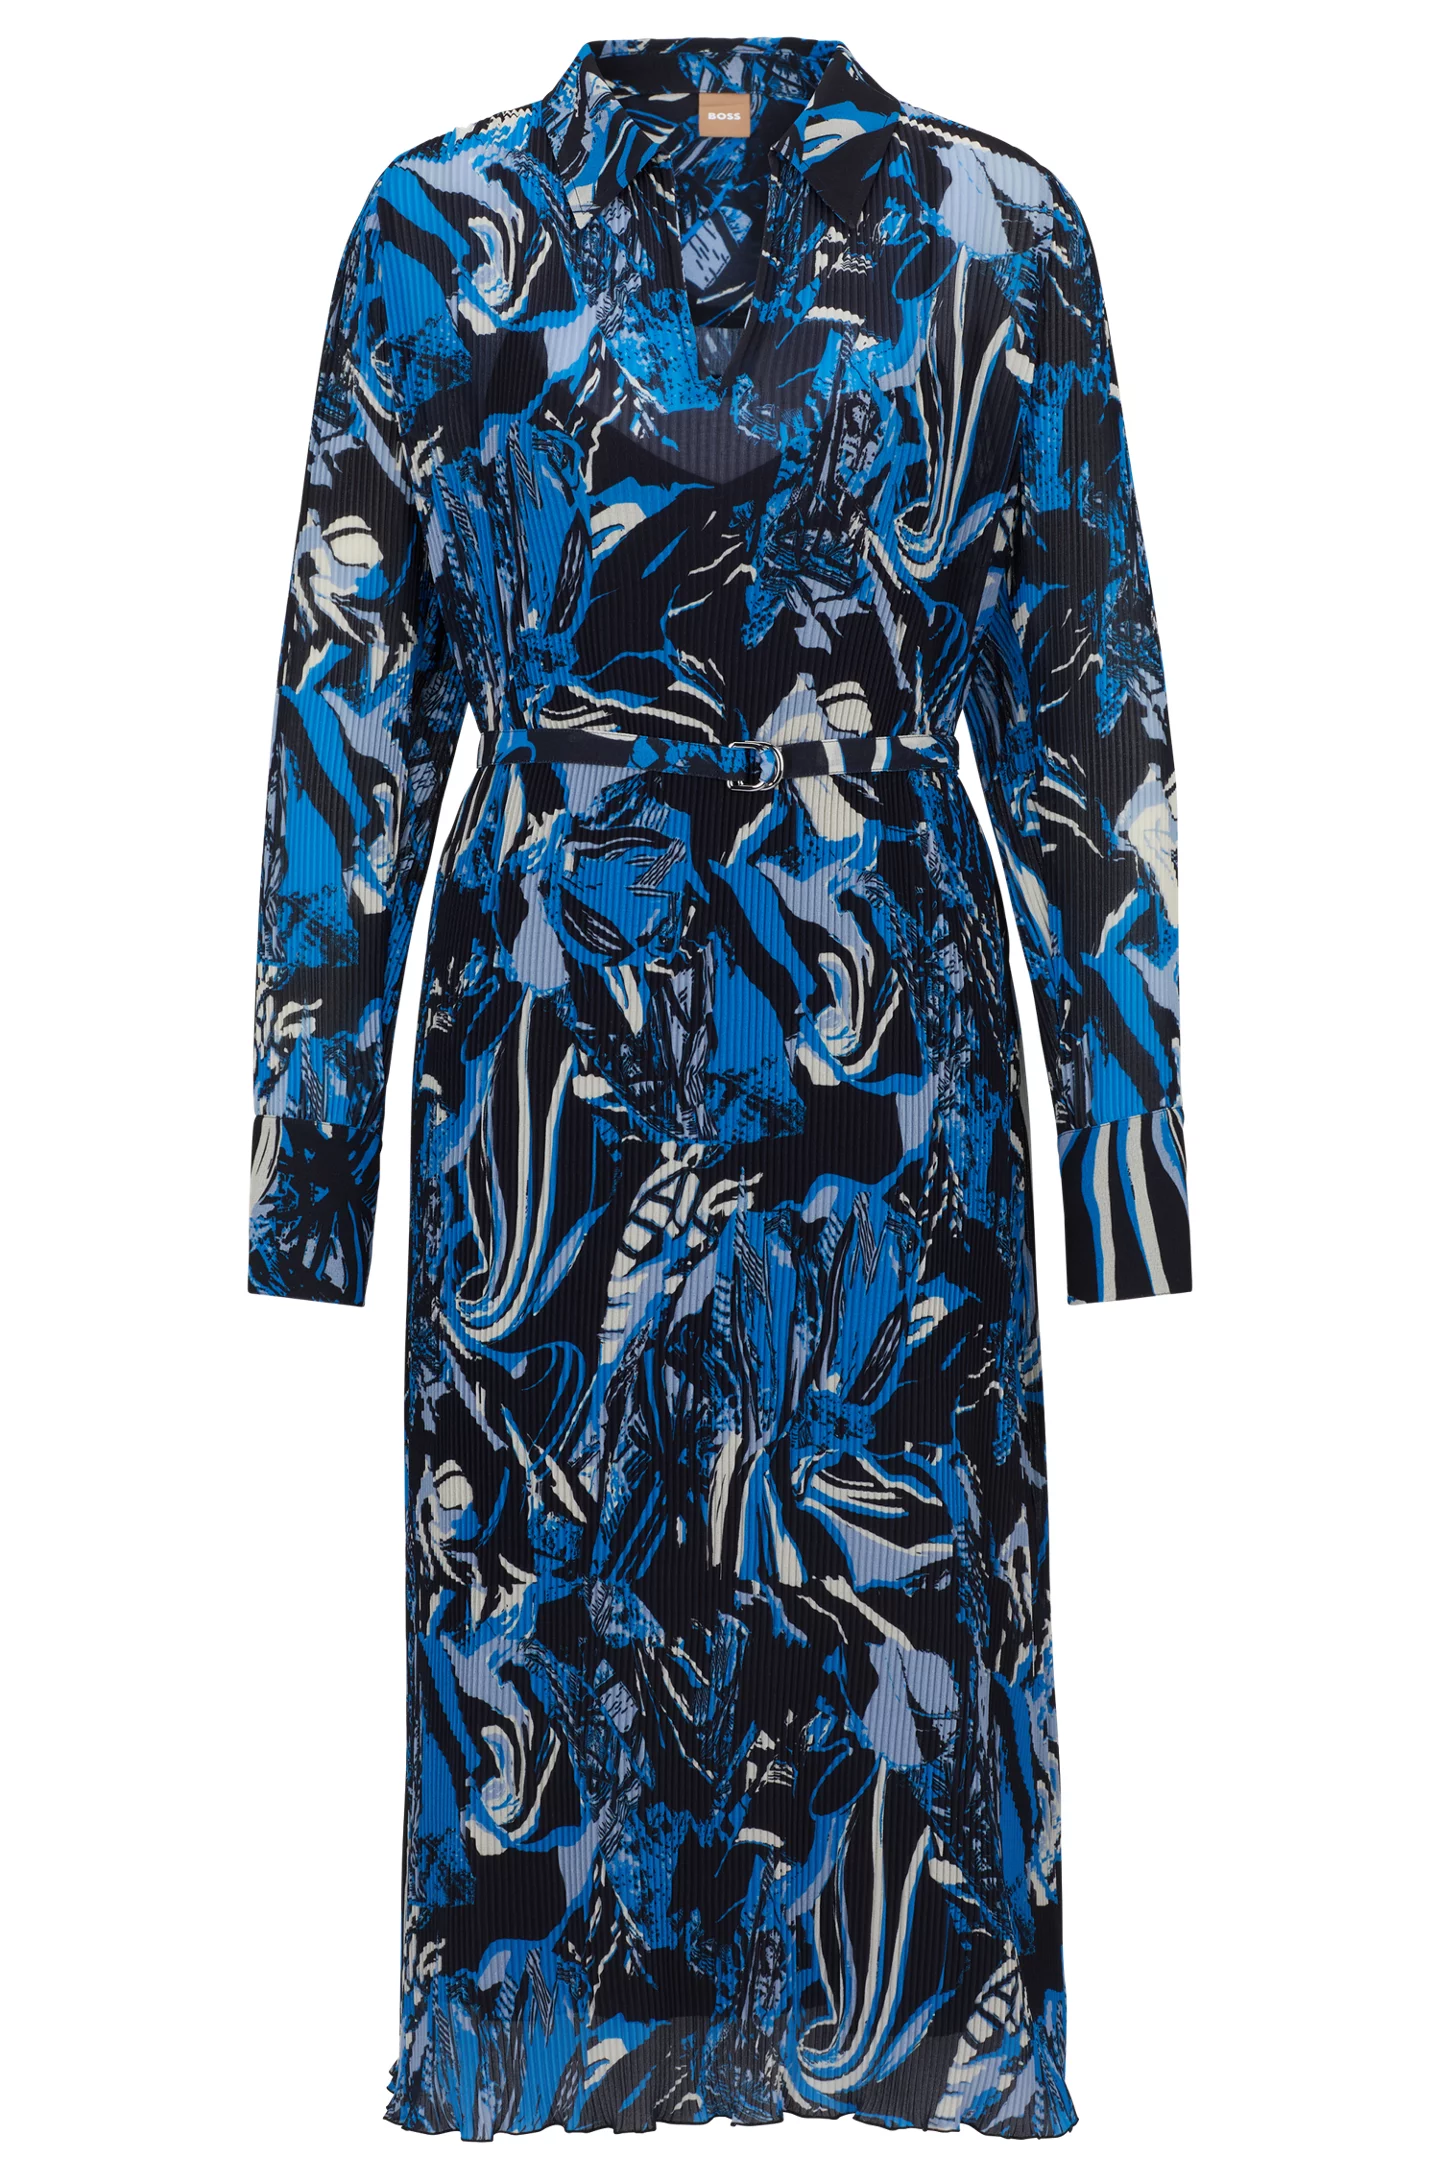 Платье BOSS Seasonal-Print With Belt And V Neckline, мультиколор платье с воротником халтер и v образным вырезом zara синий индиго